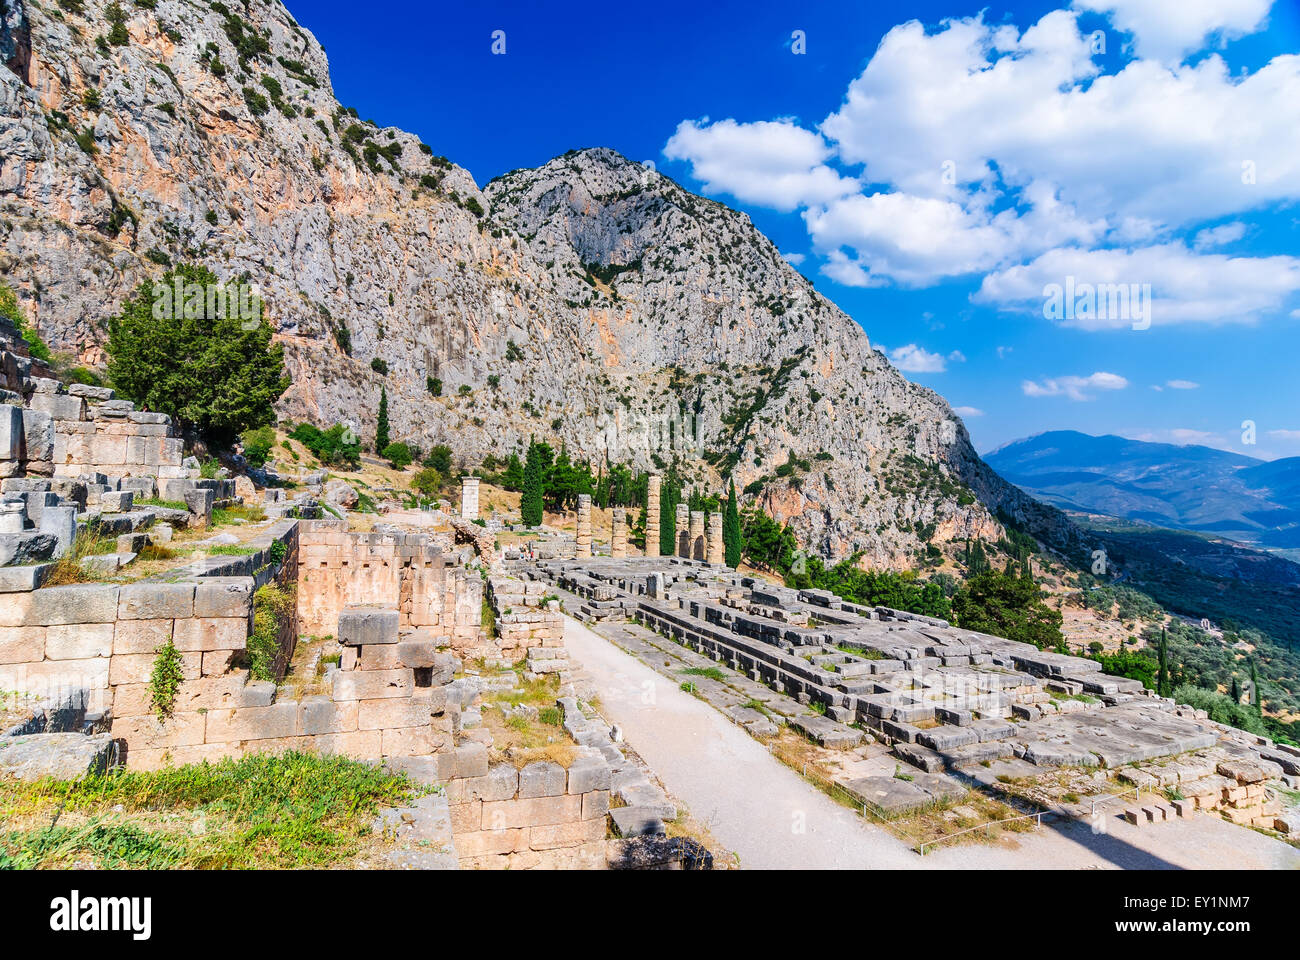 Antiken Griechenland. Ruine bleibt der große Tempel des Apollo in Delphi, Griechenland, griechische Kultur Wahrzeichen. Stockfoto